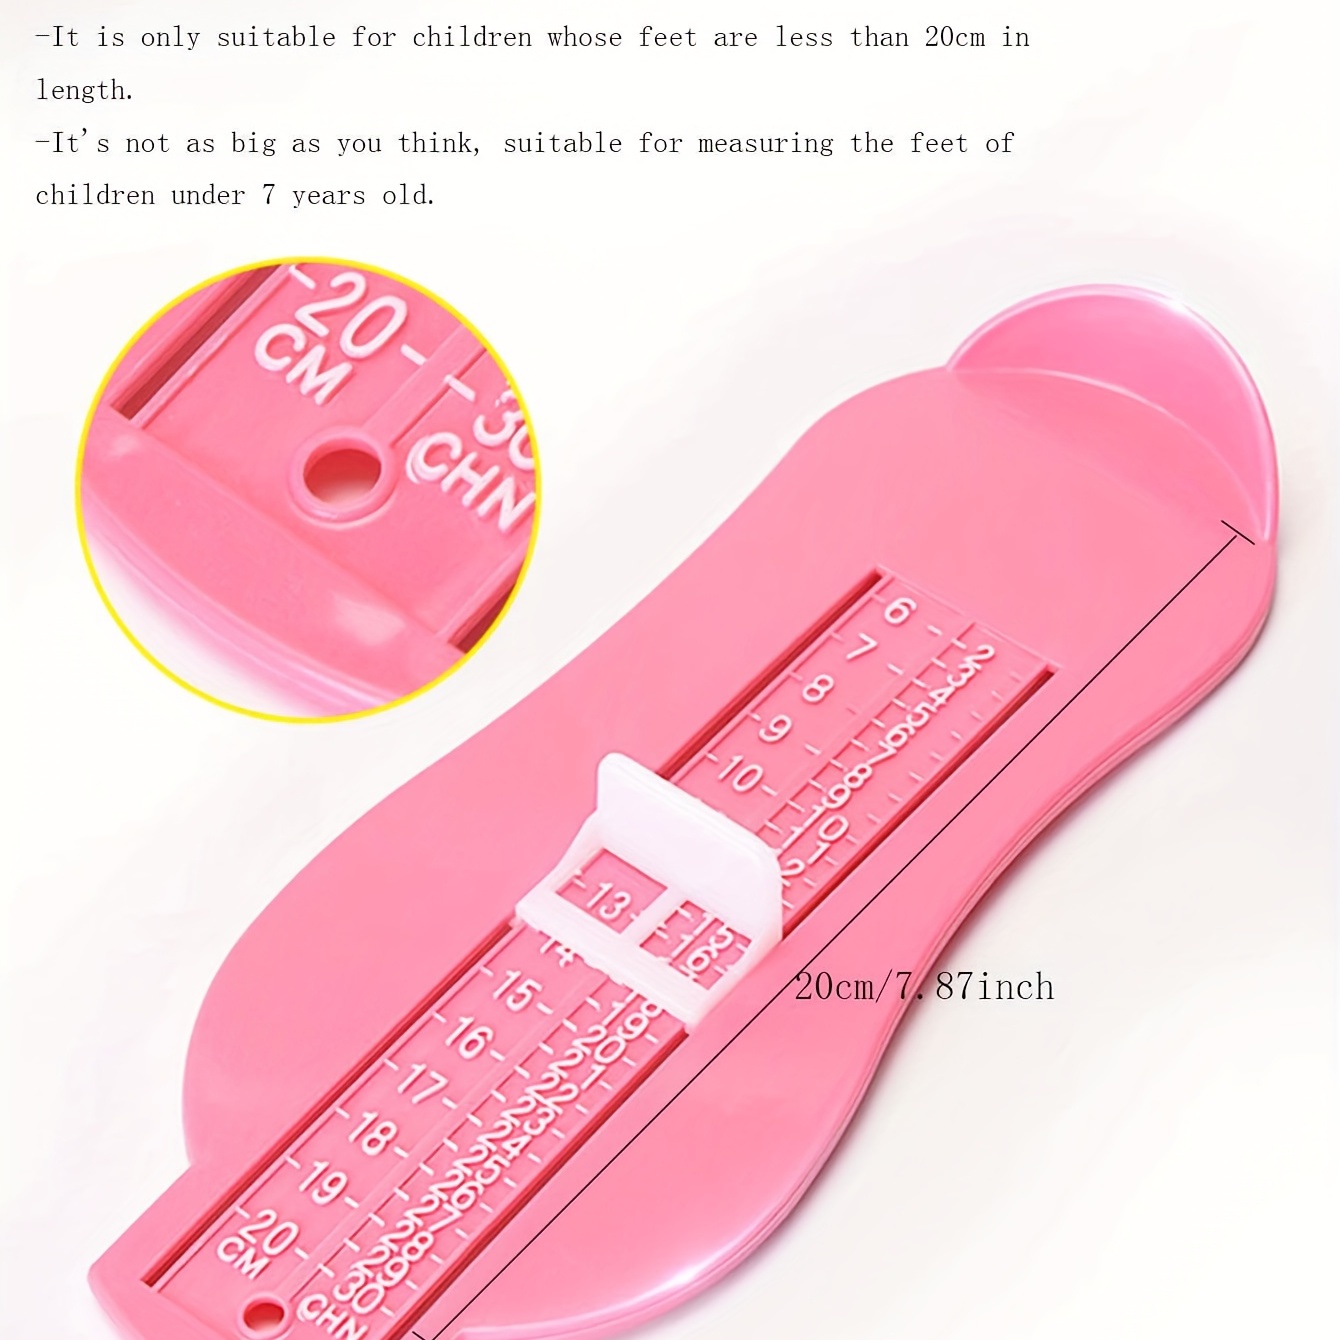 Bébé Pied Instrument De Mesure Pied Instrument De Mesure Famille Enfants  Achat Chaussure Instrument De Mesure